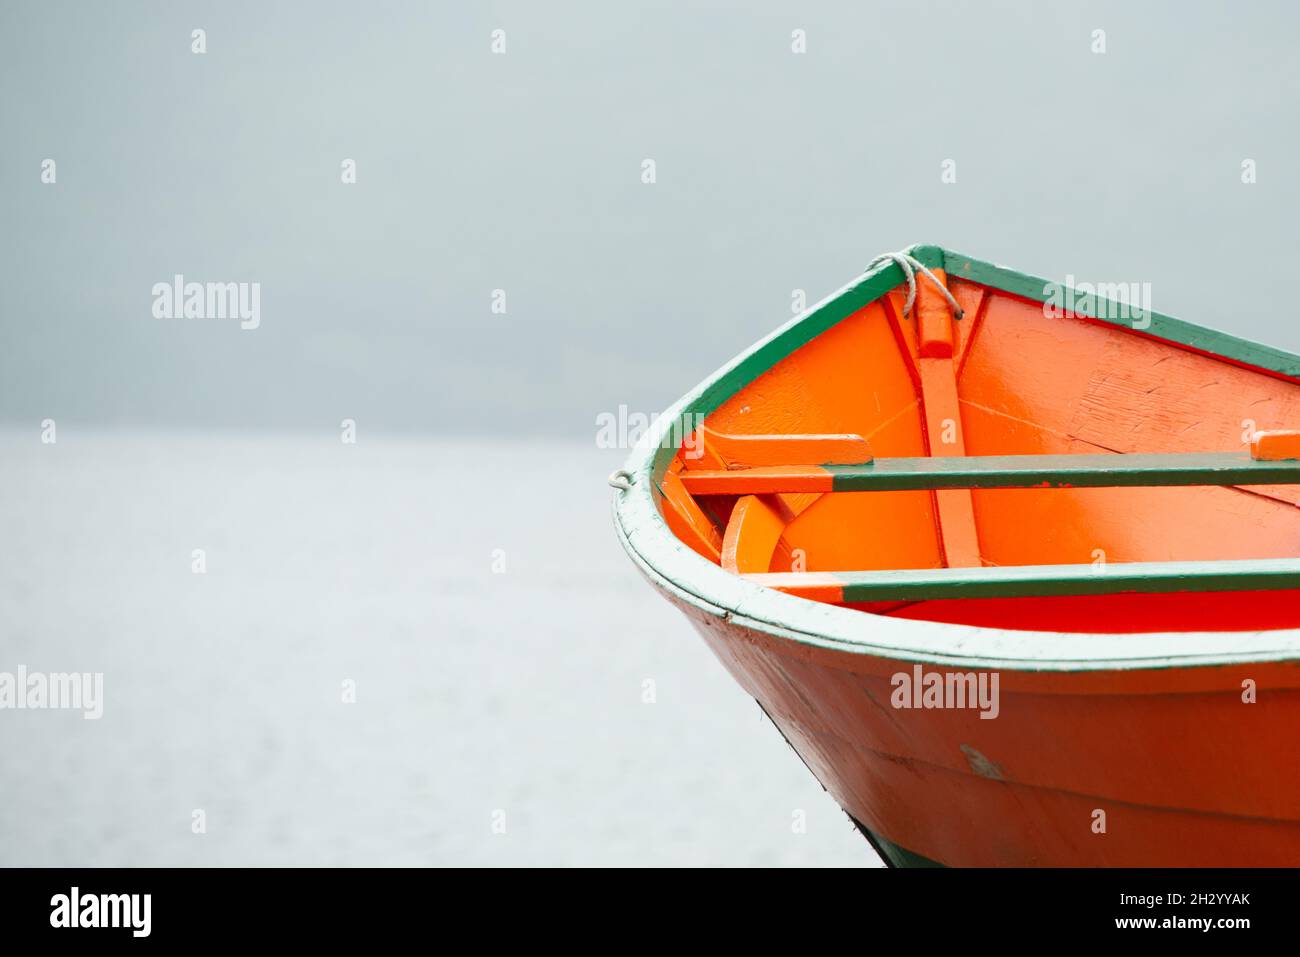 Ein helles, farbenfrohes, orangefarbenes und grünes Holzfischerboot, Holzboot, auf der Bucht. Es gibt Nebel, Regen und Nebel im Hintergrund. Die Szene ist düster. Stockfoto